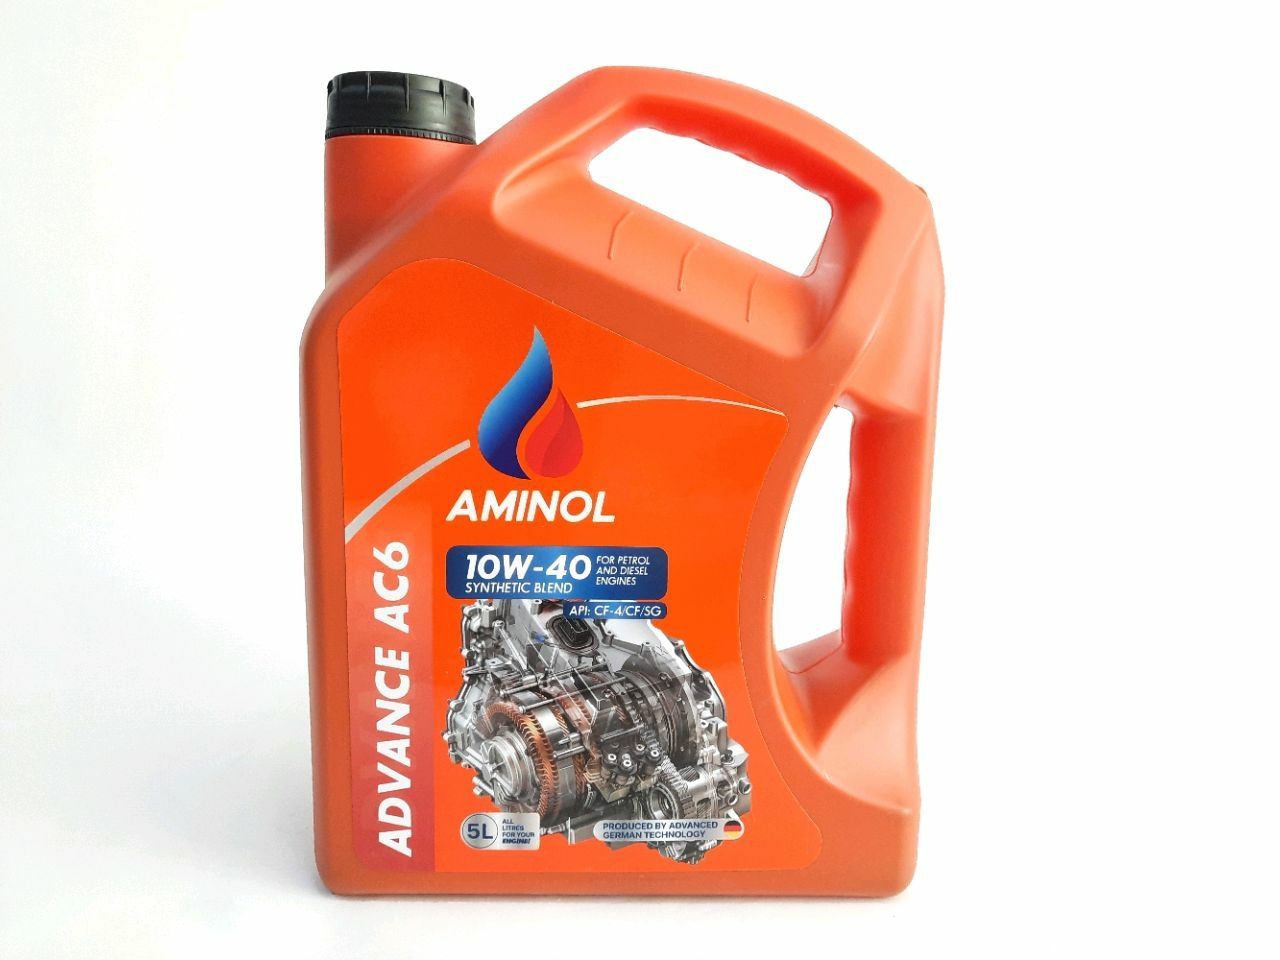 Aminol ADVANCE AC6 10w-40 (CF-4) 5L.